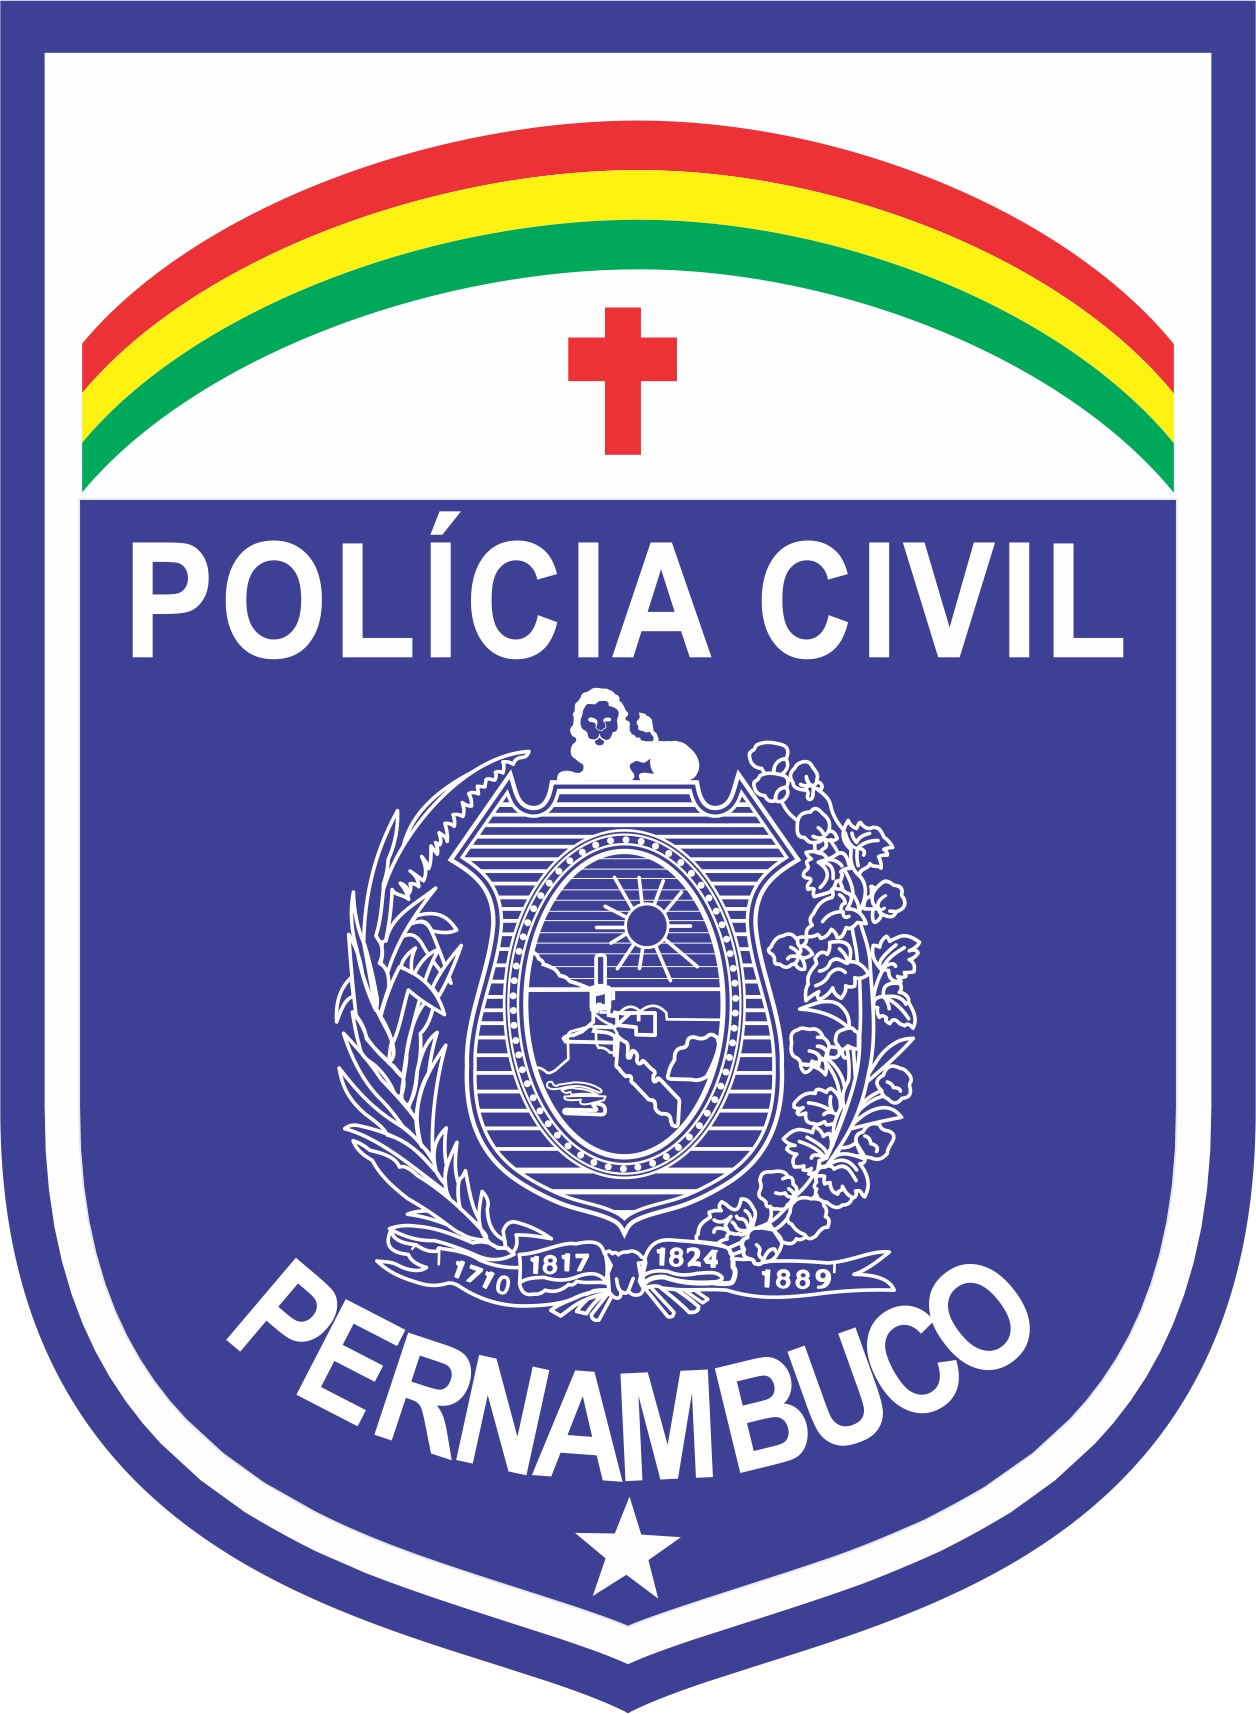 Resultado de imagem para policia civil de pernambuco